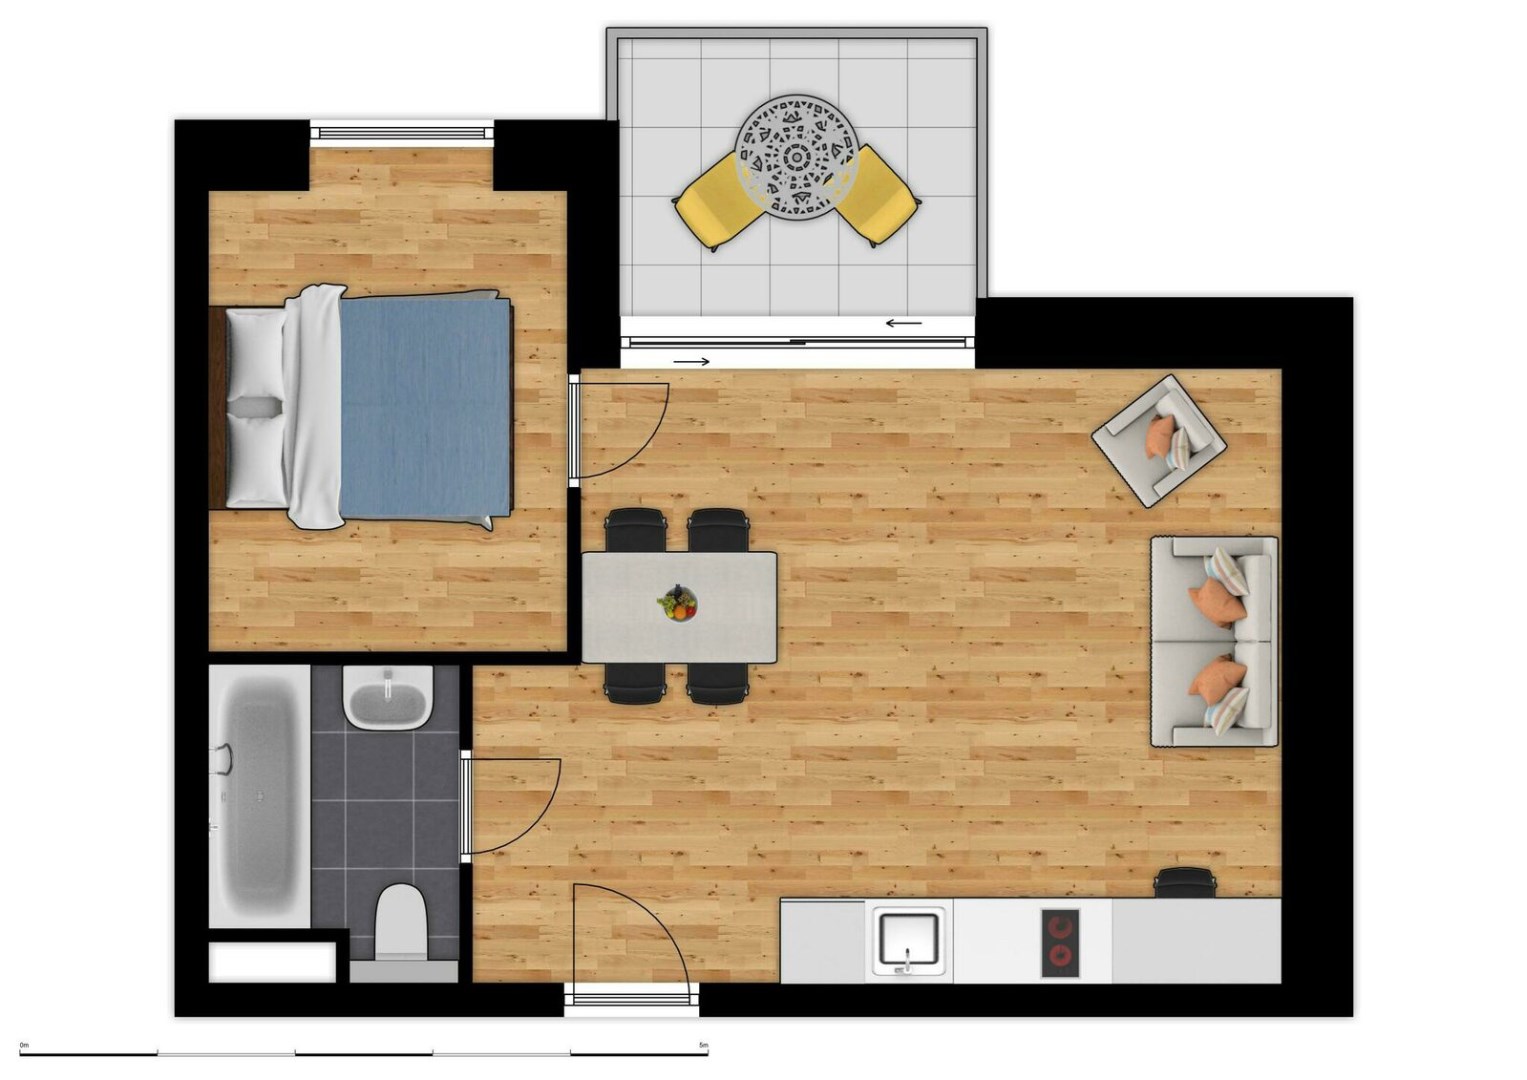 Vakantiesuite in Holiday Suites Westende met slaapkamer en zetelbed (4p) 